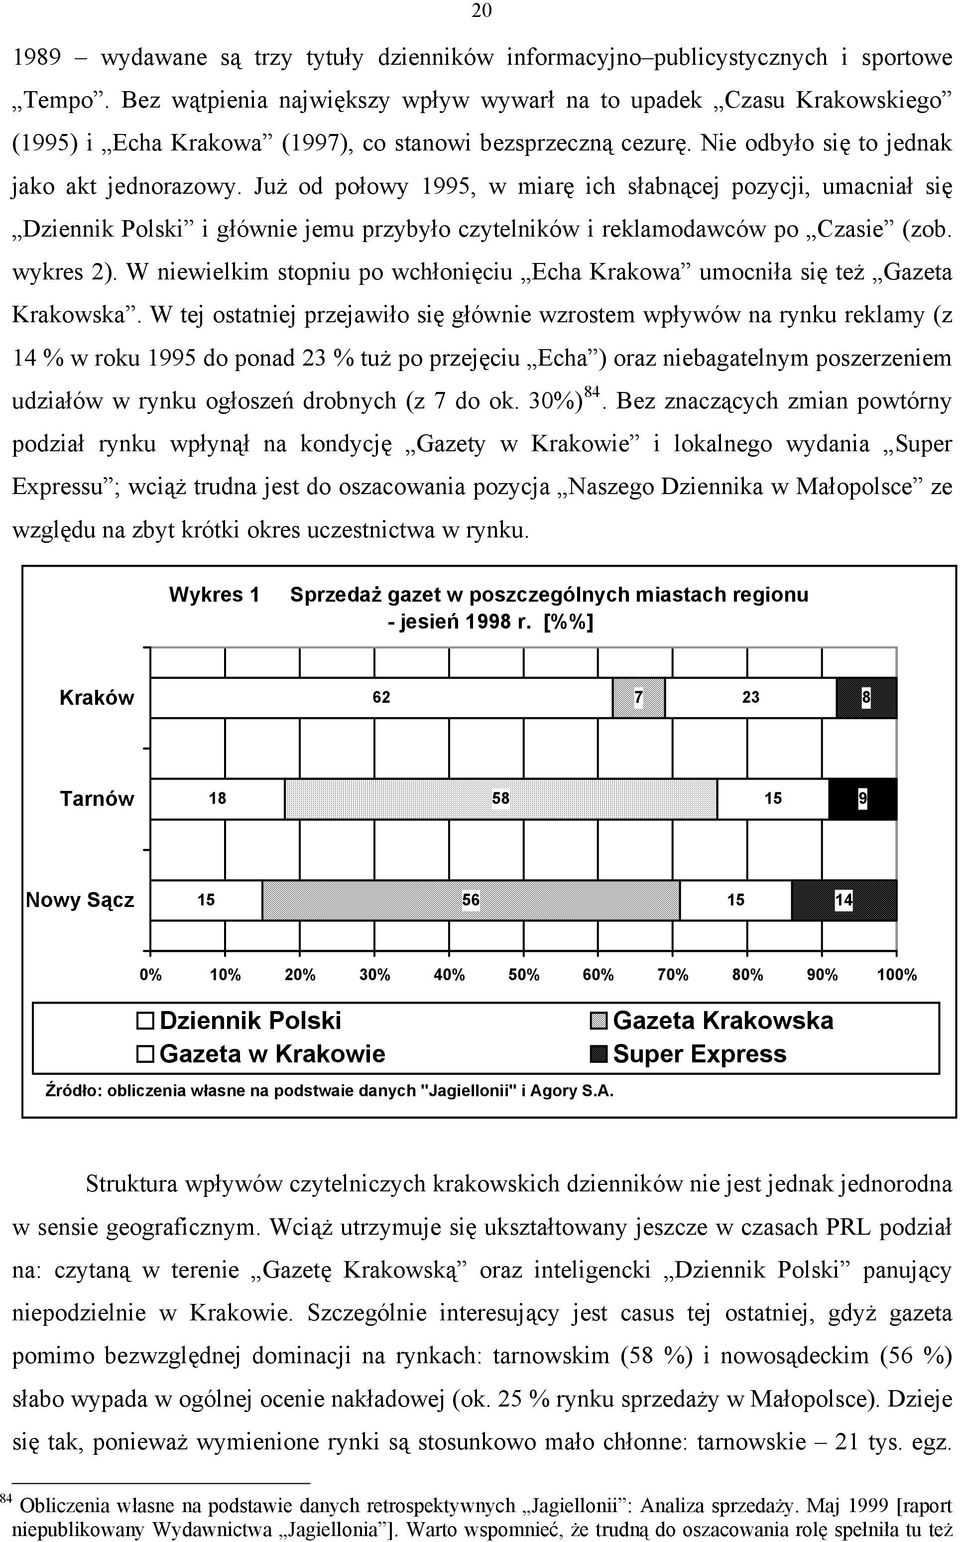 Już od połowy 1995, w miarę ich słabnącej pozycji, umacniał się Dziennik Polski i głównie jemu przybyło czytelników i reklamodawców po Czasie (zob. wykres 2).